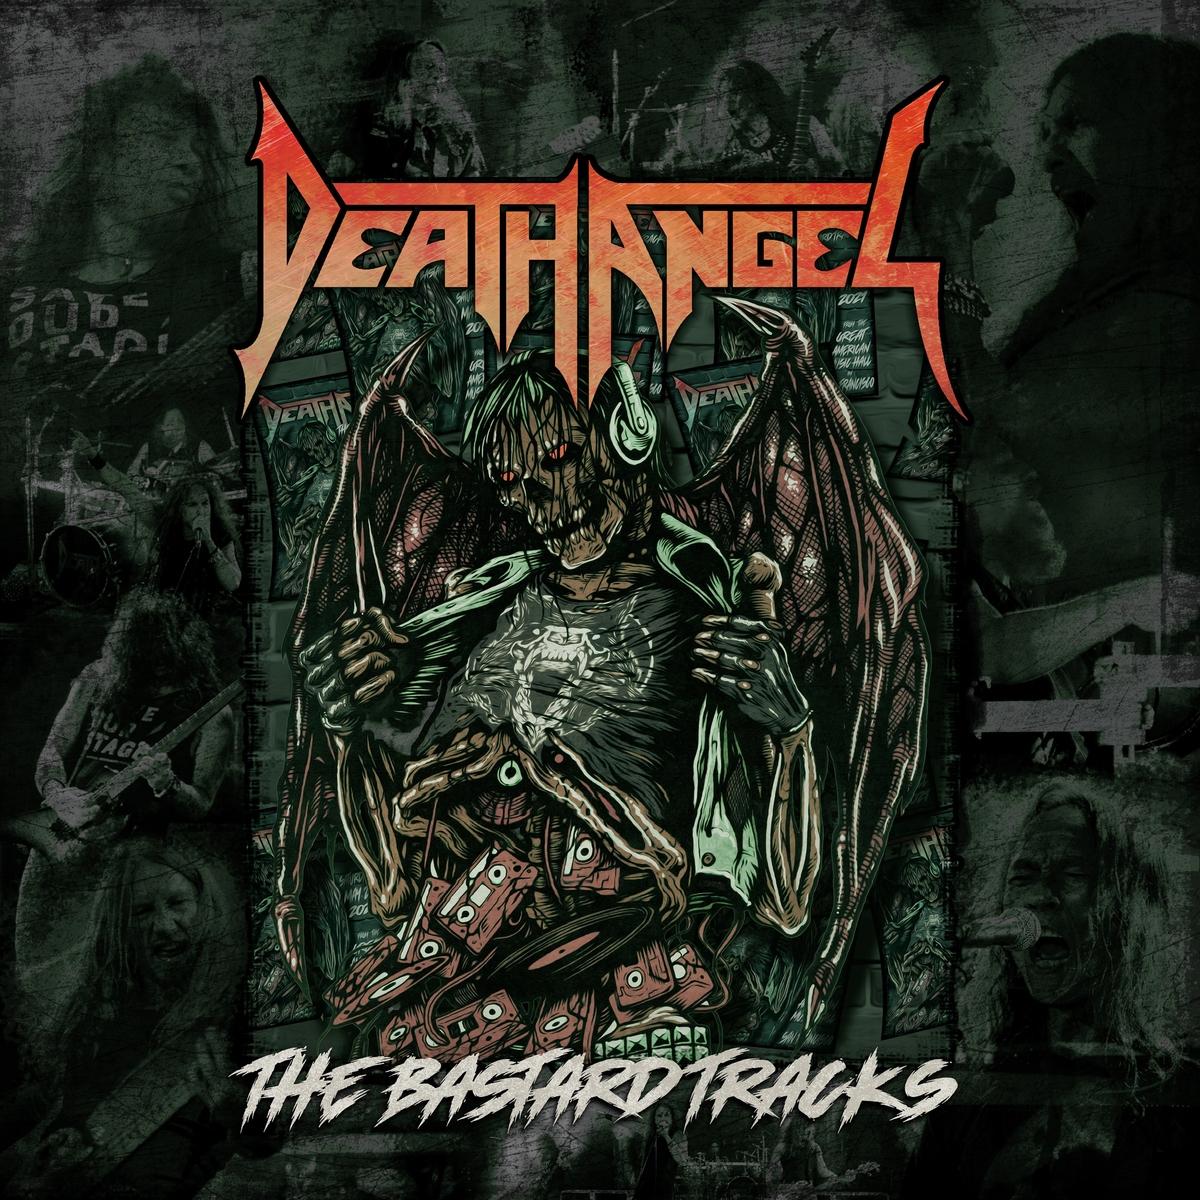 Death Angel - The Bastard Tracks (2CD)(Live) (2021, Thrash Metal) -  Download for free via torrent - Metal Tracker